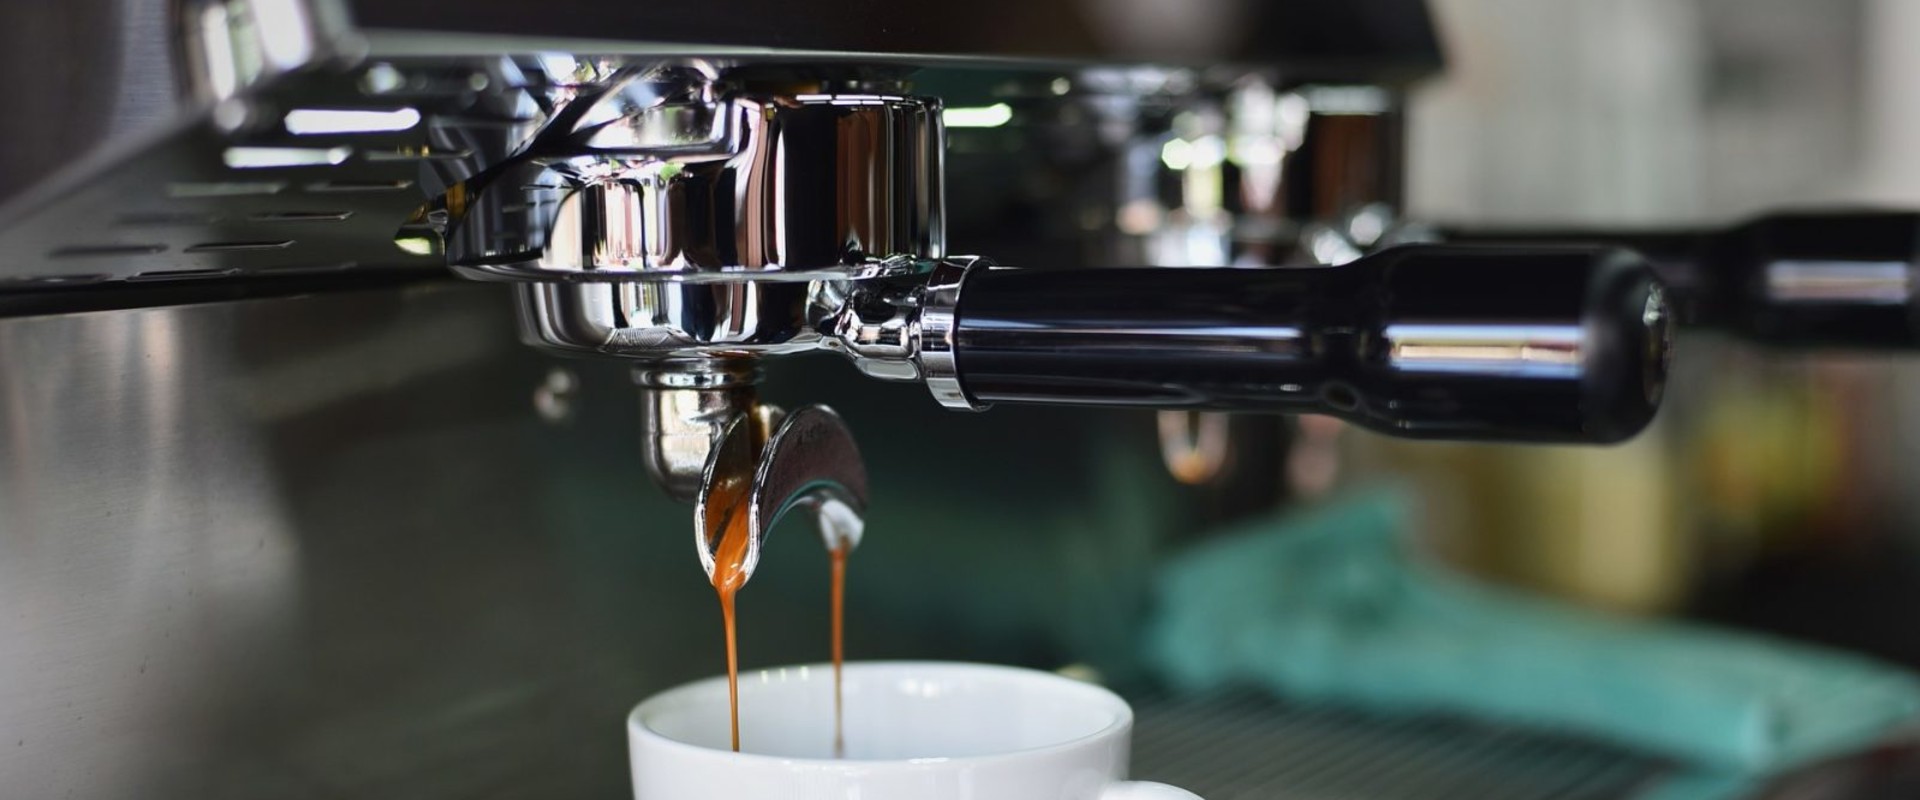 Welk merk koffiemachine is het beste voor thuis?